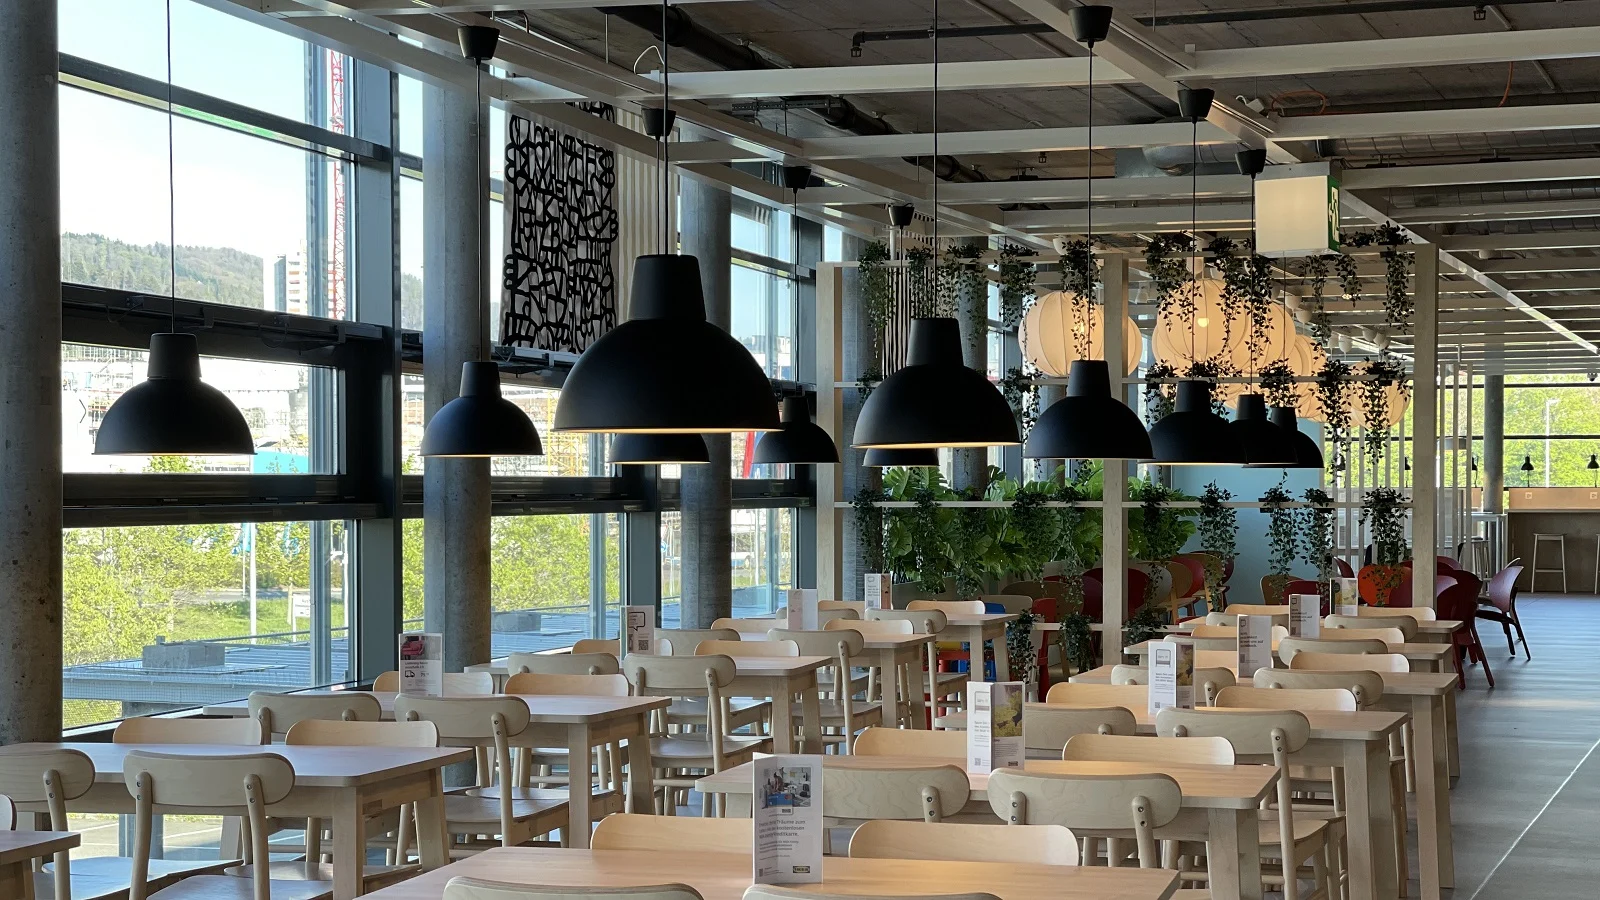 Neueröffnung des IKEA Restaurants in Spreitenbach